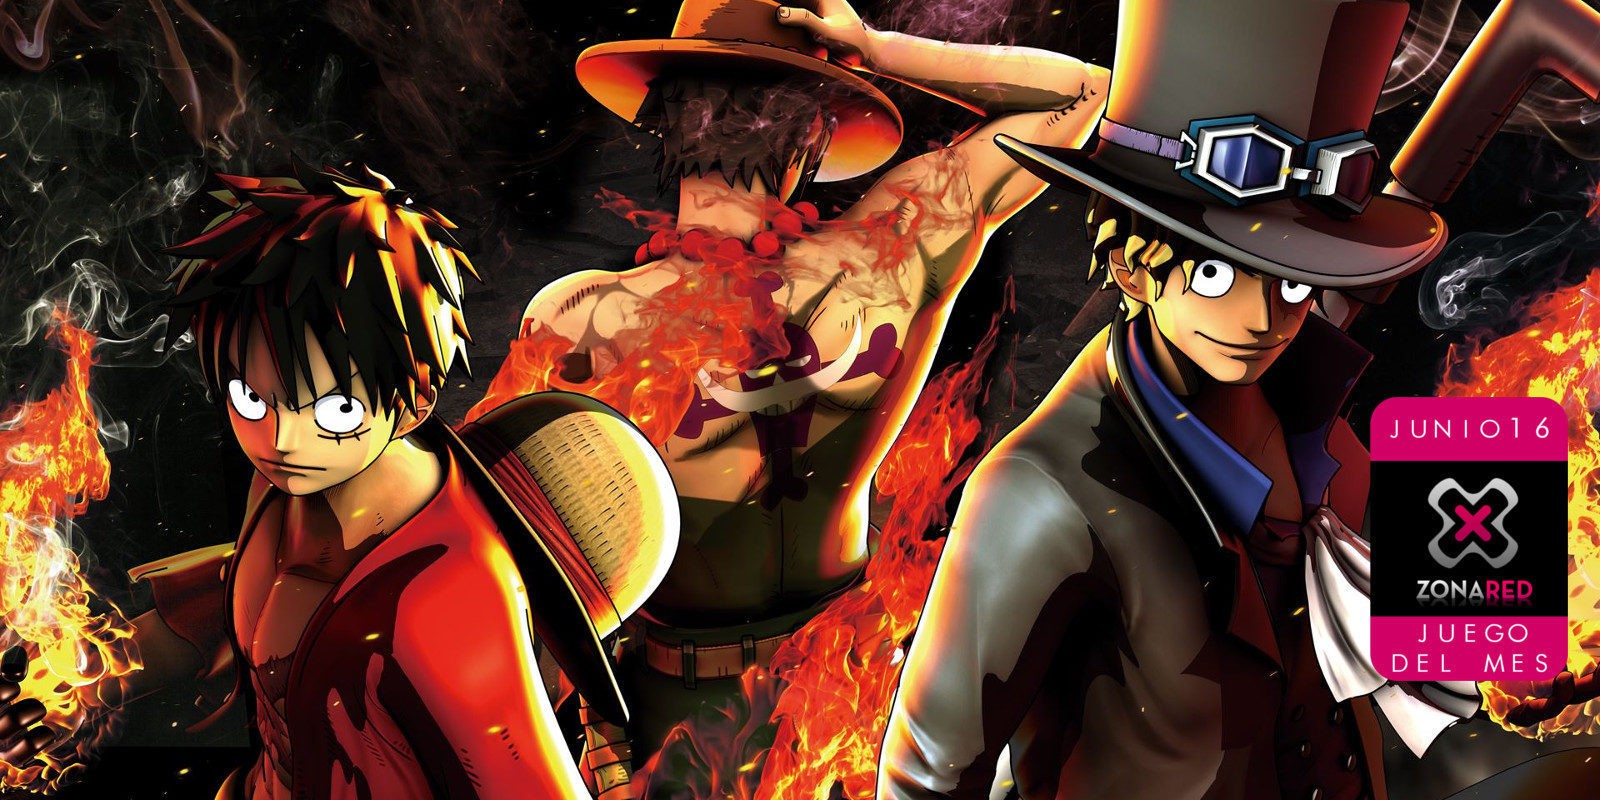 'One Piece Burning Blood' - Juego del Mes de junio en Zonared